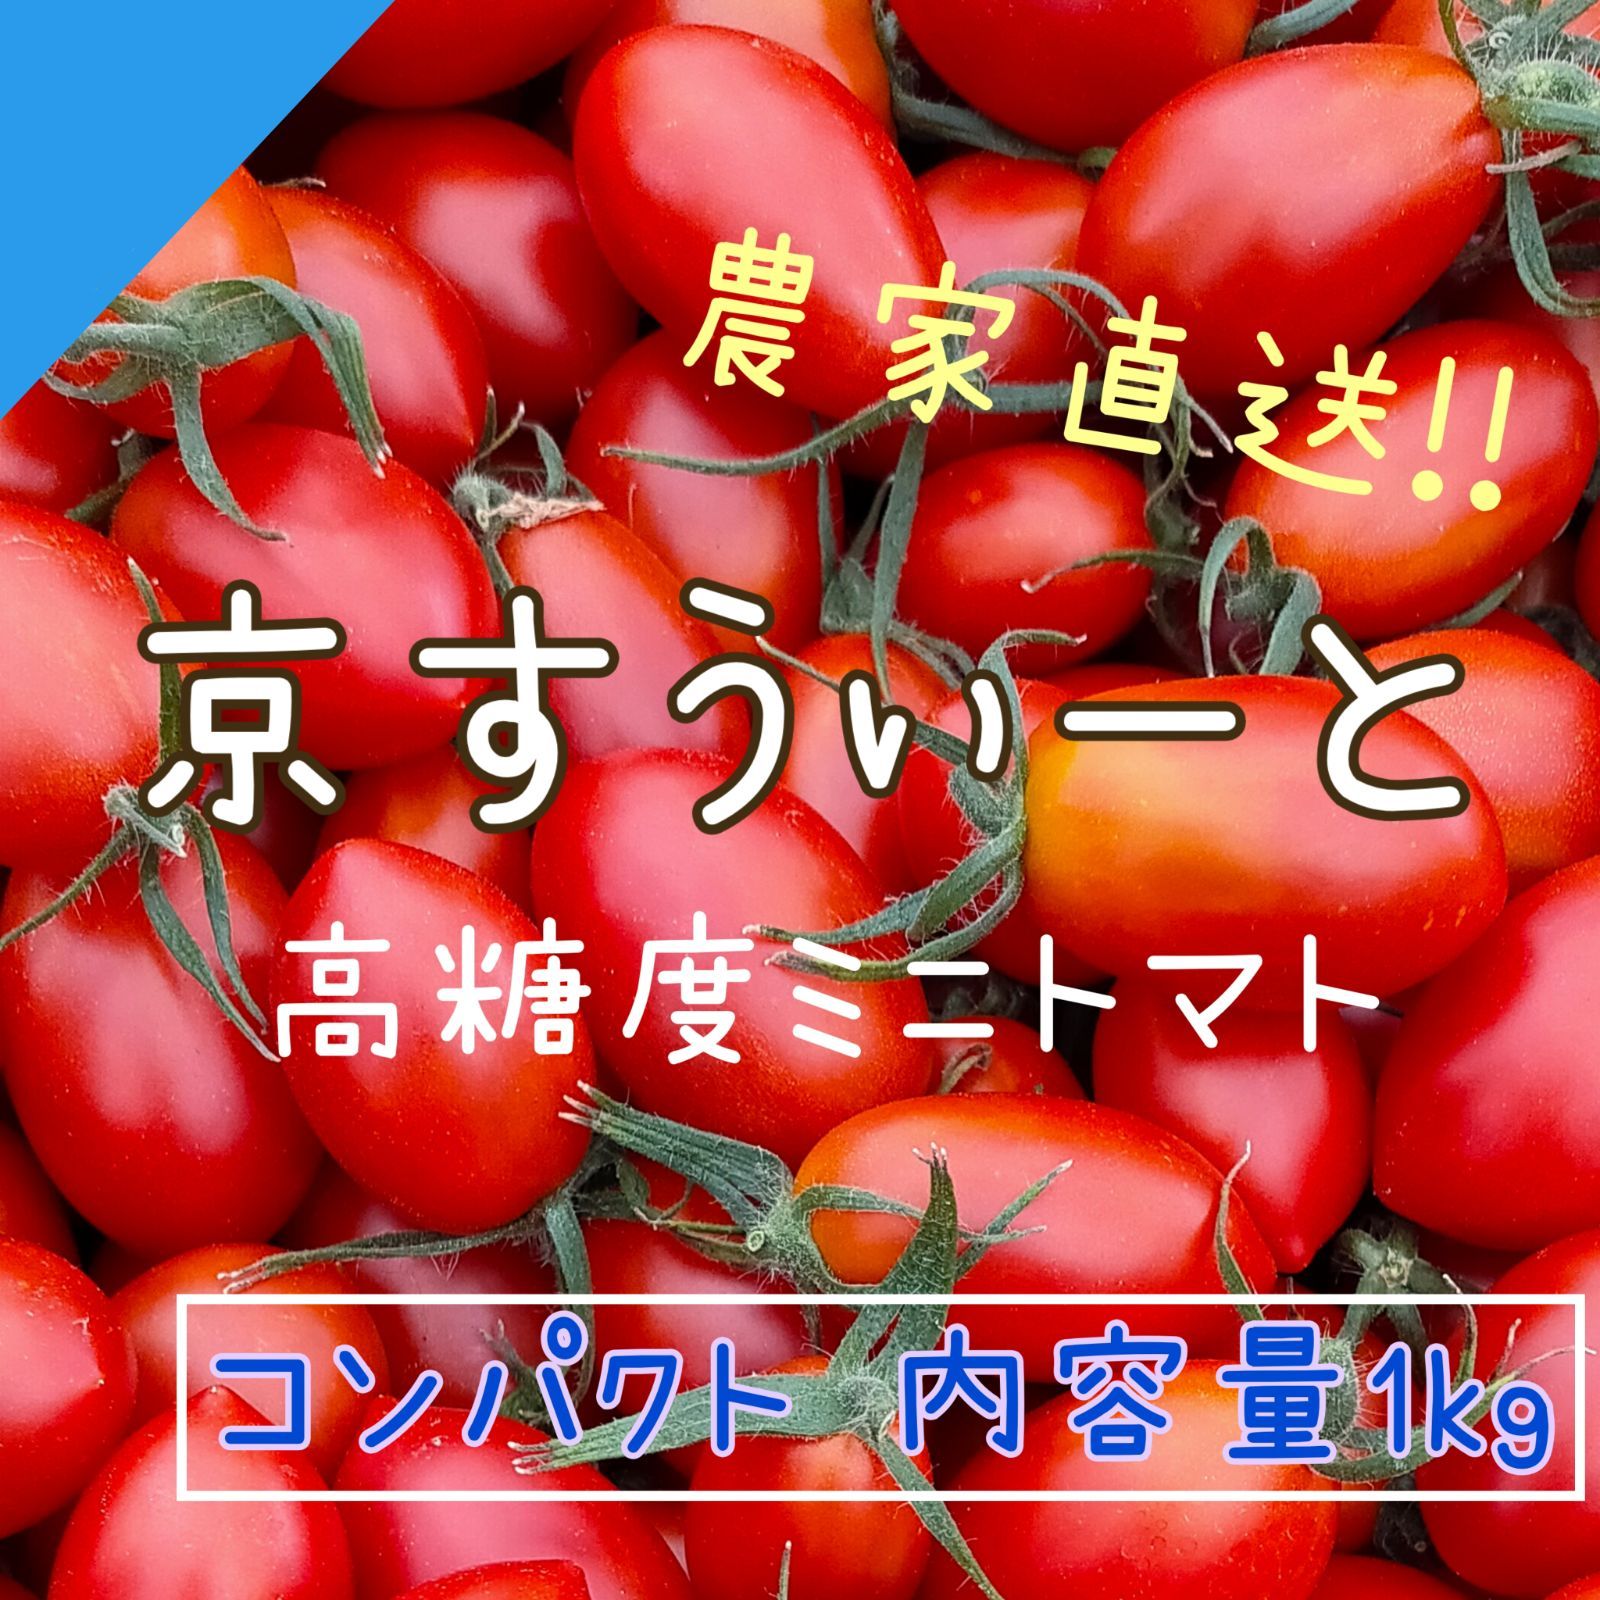 【京すうぃーと1kg】コンパクト 京都産 フルーツミニトマト-0